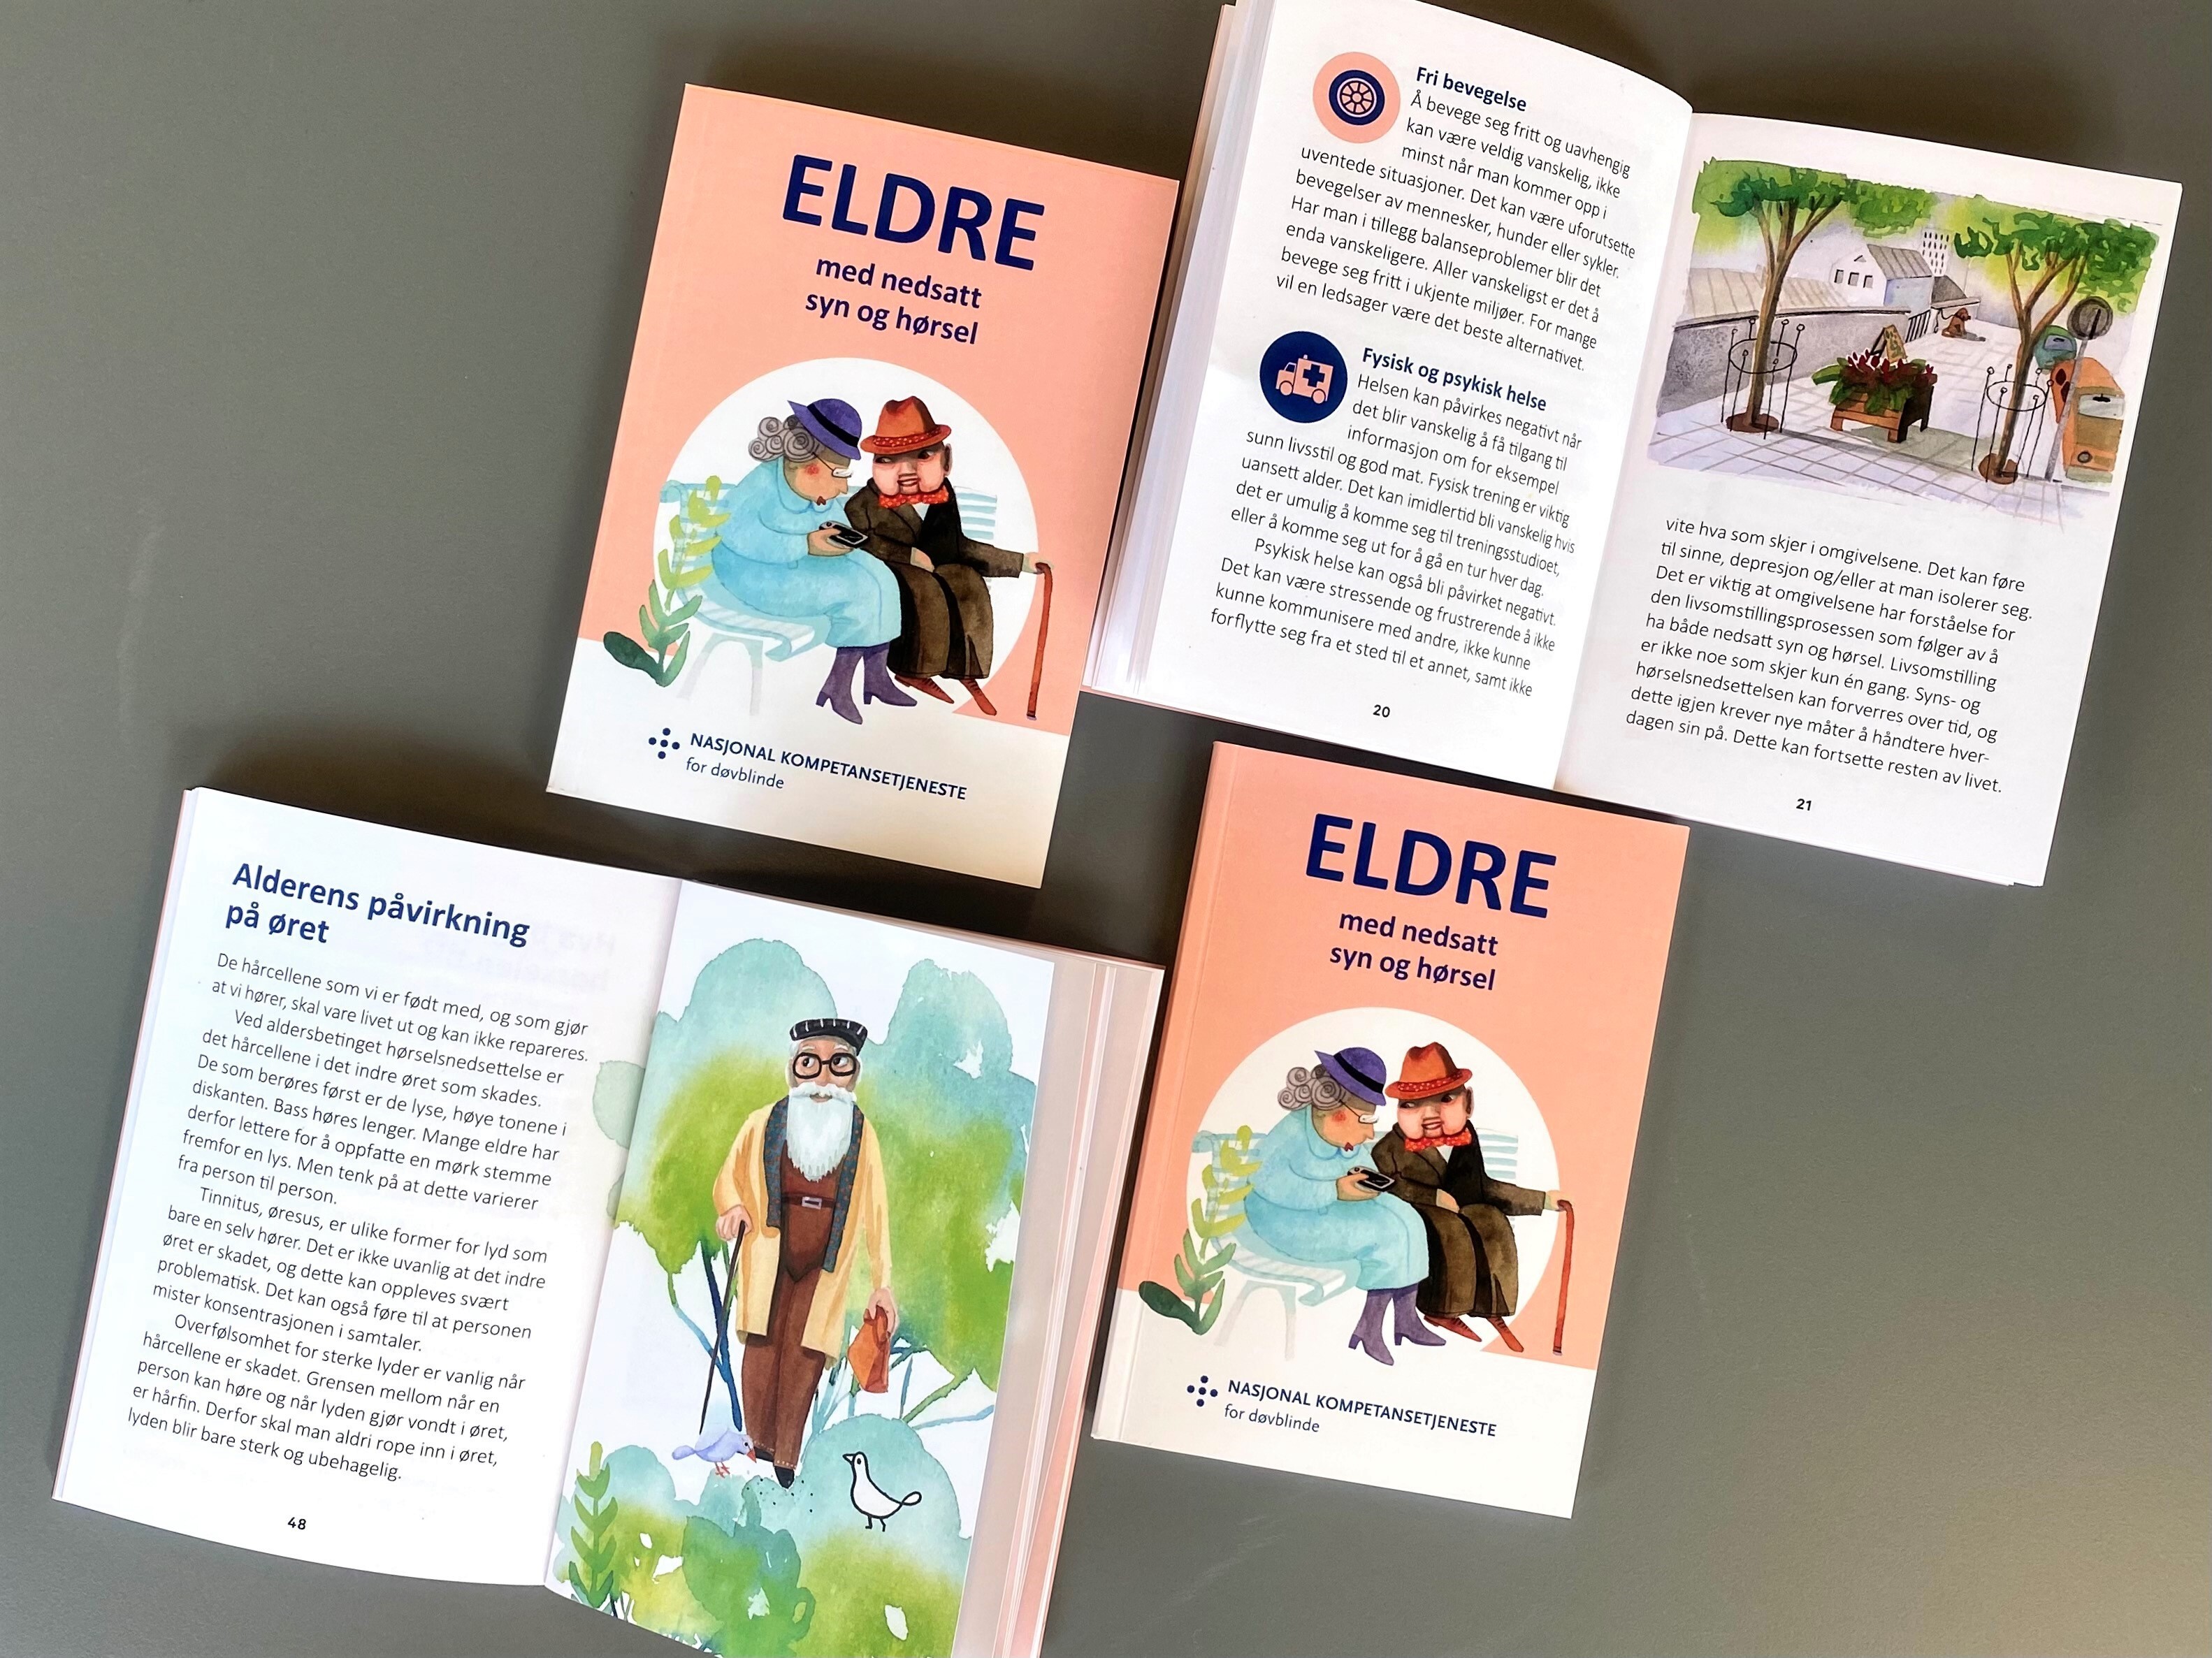 Bilder av eldreboka Eldre med nedsatt syn og hørsel, fire eksemplarer.